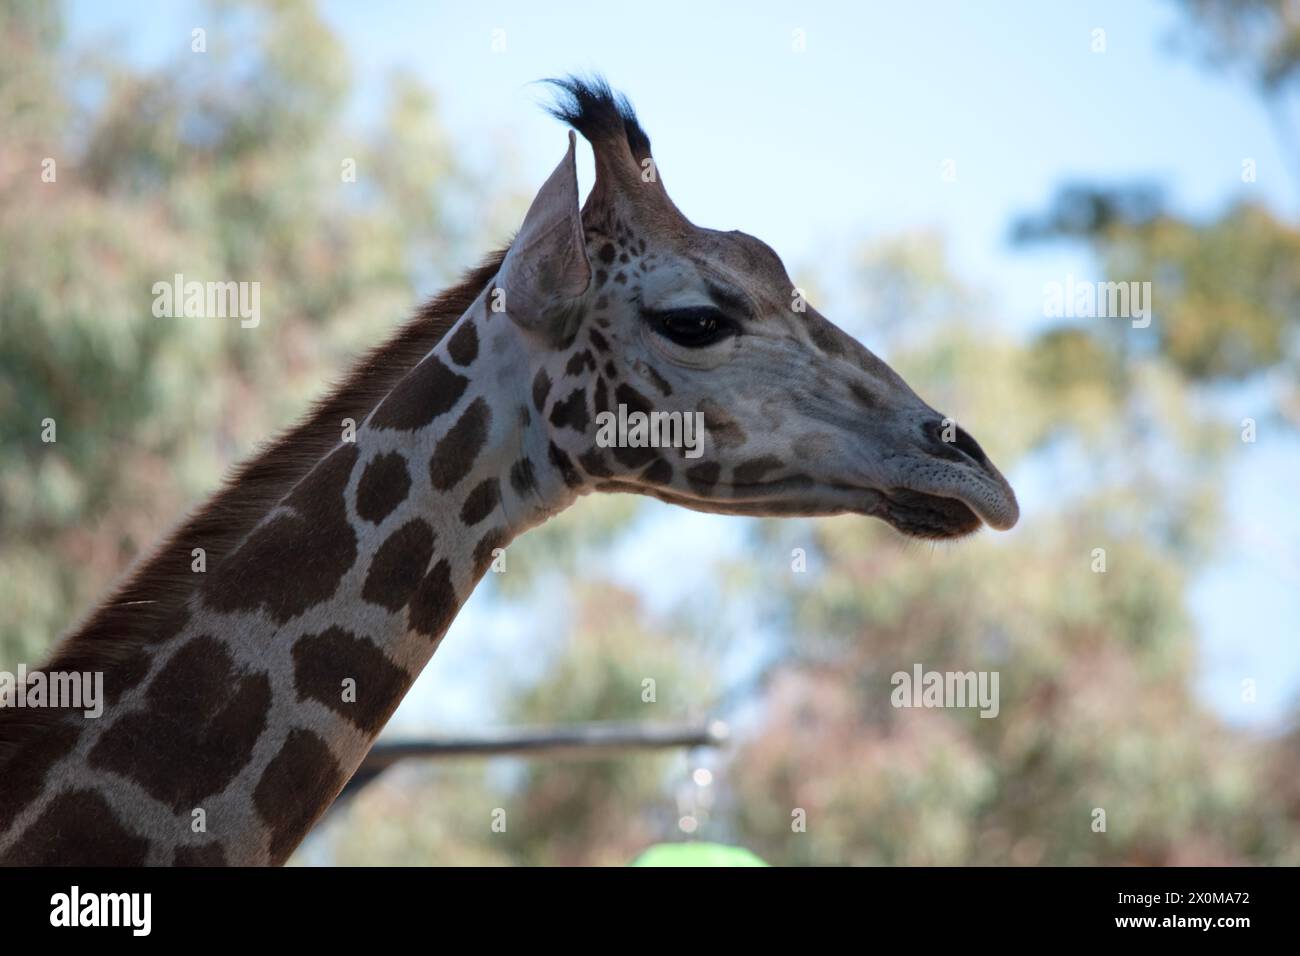 La giraffa è la più alta di tutti i mammiferi. La giraffa ha un corpo corto, una coda tufata, una criniera corta e corna corti ricoperte di pelle. Foto Stock